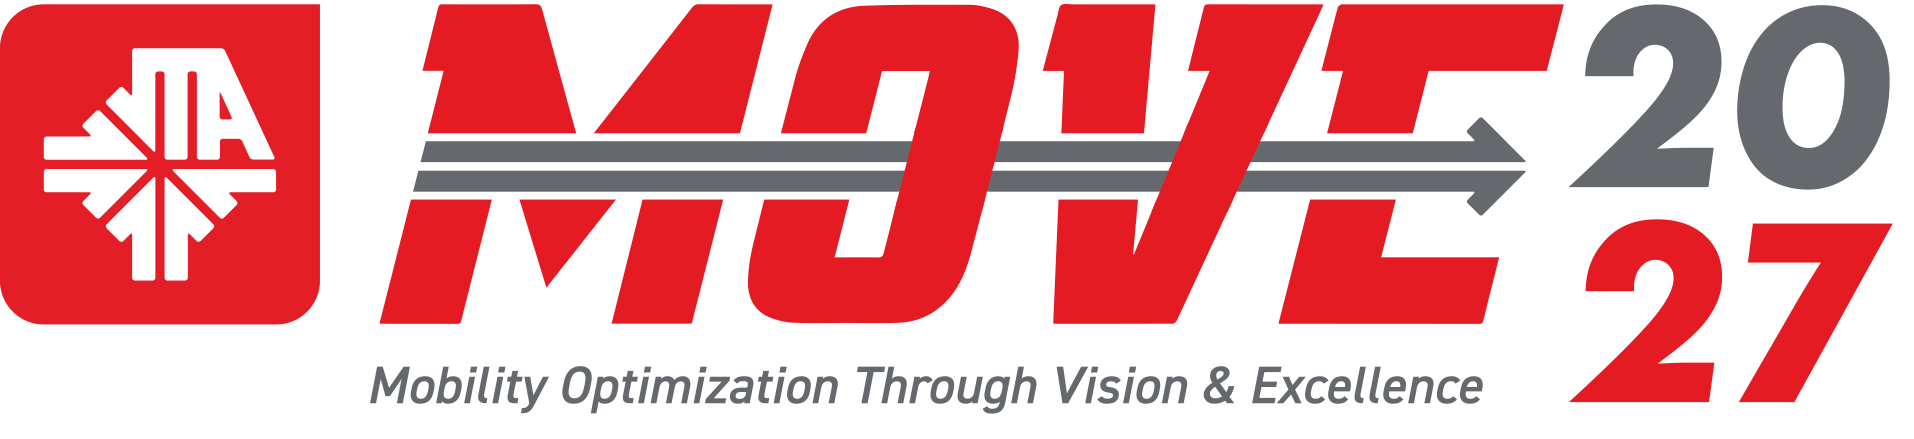 JTA MOVE 2027 Logo Final 02 (Updated) Copy